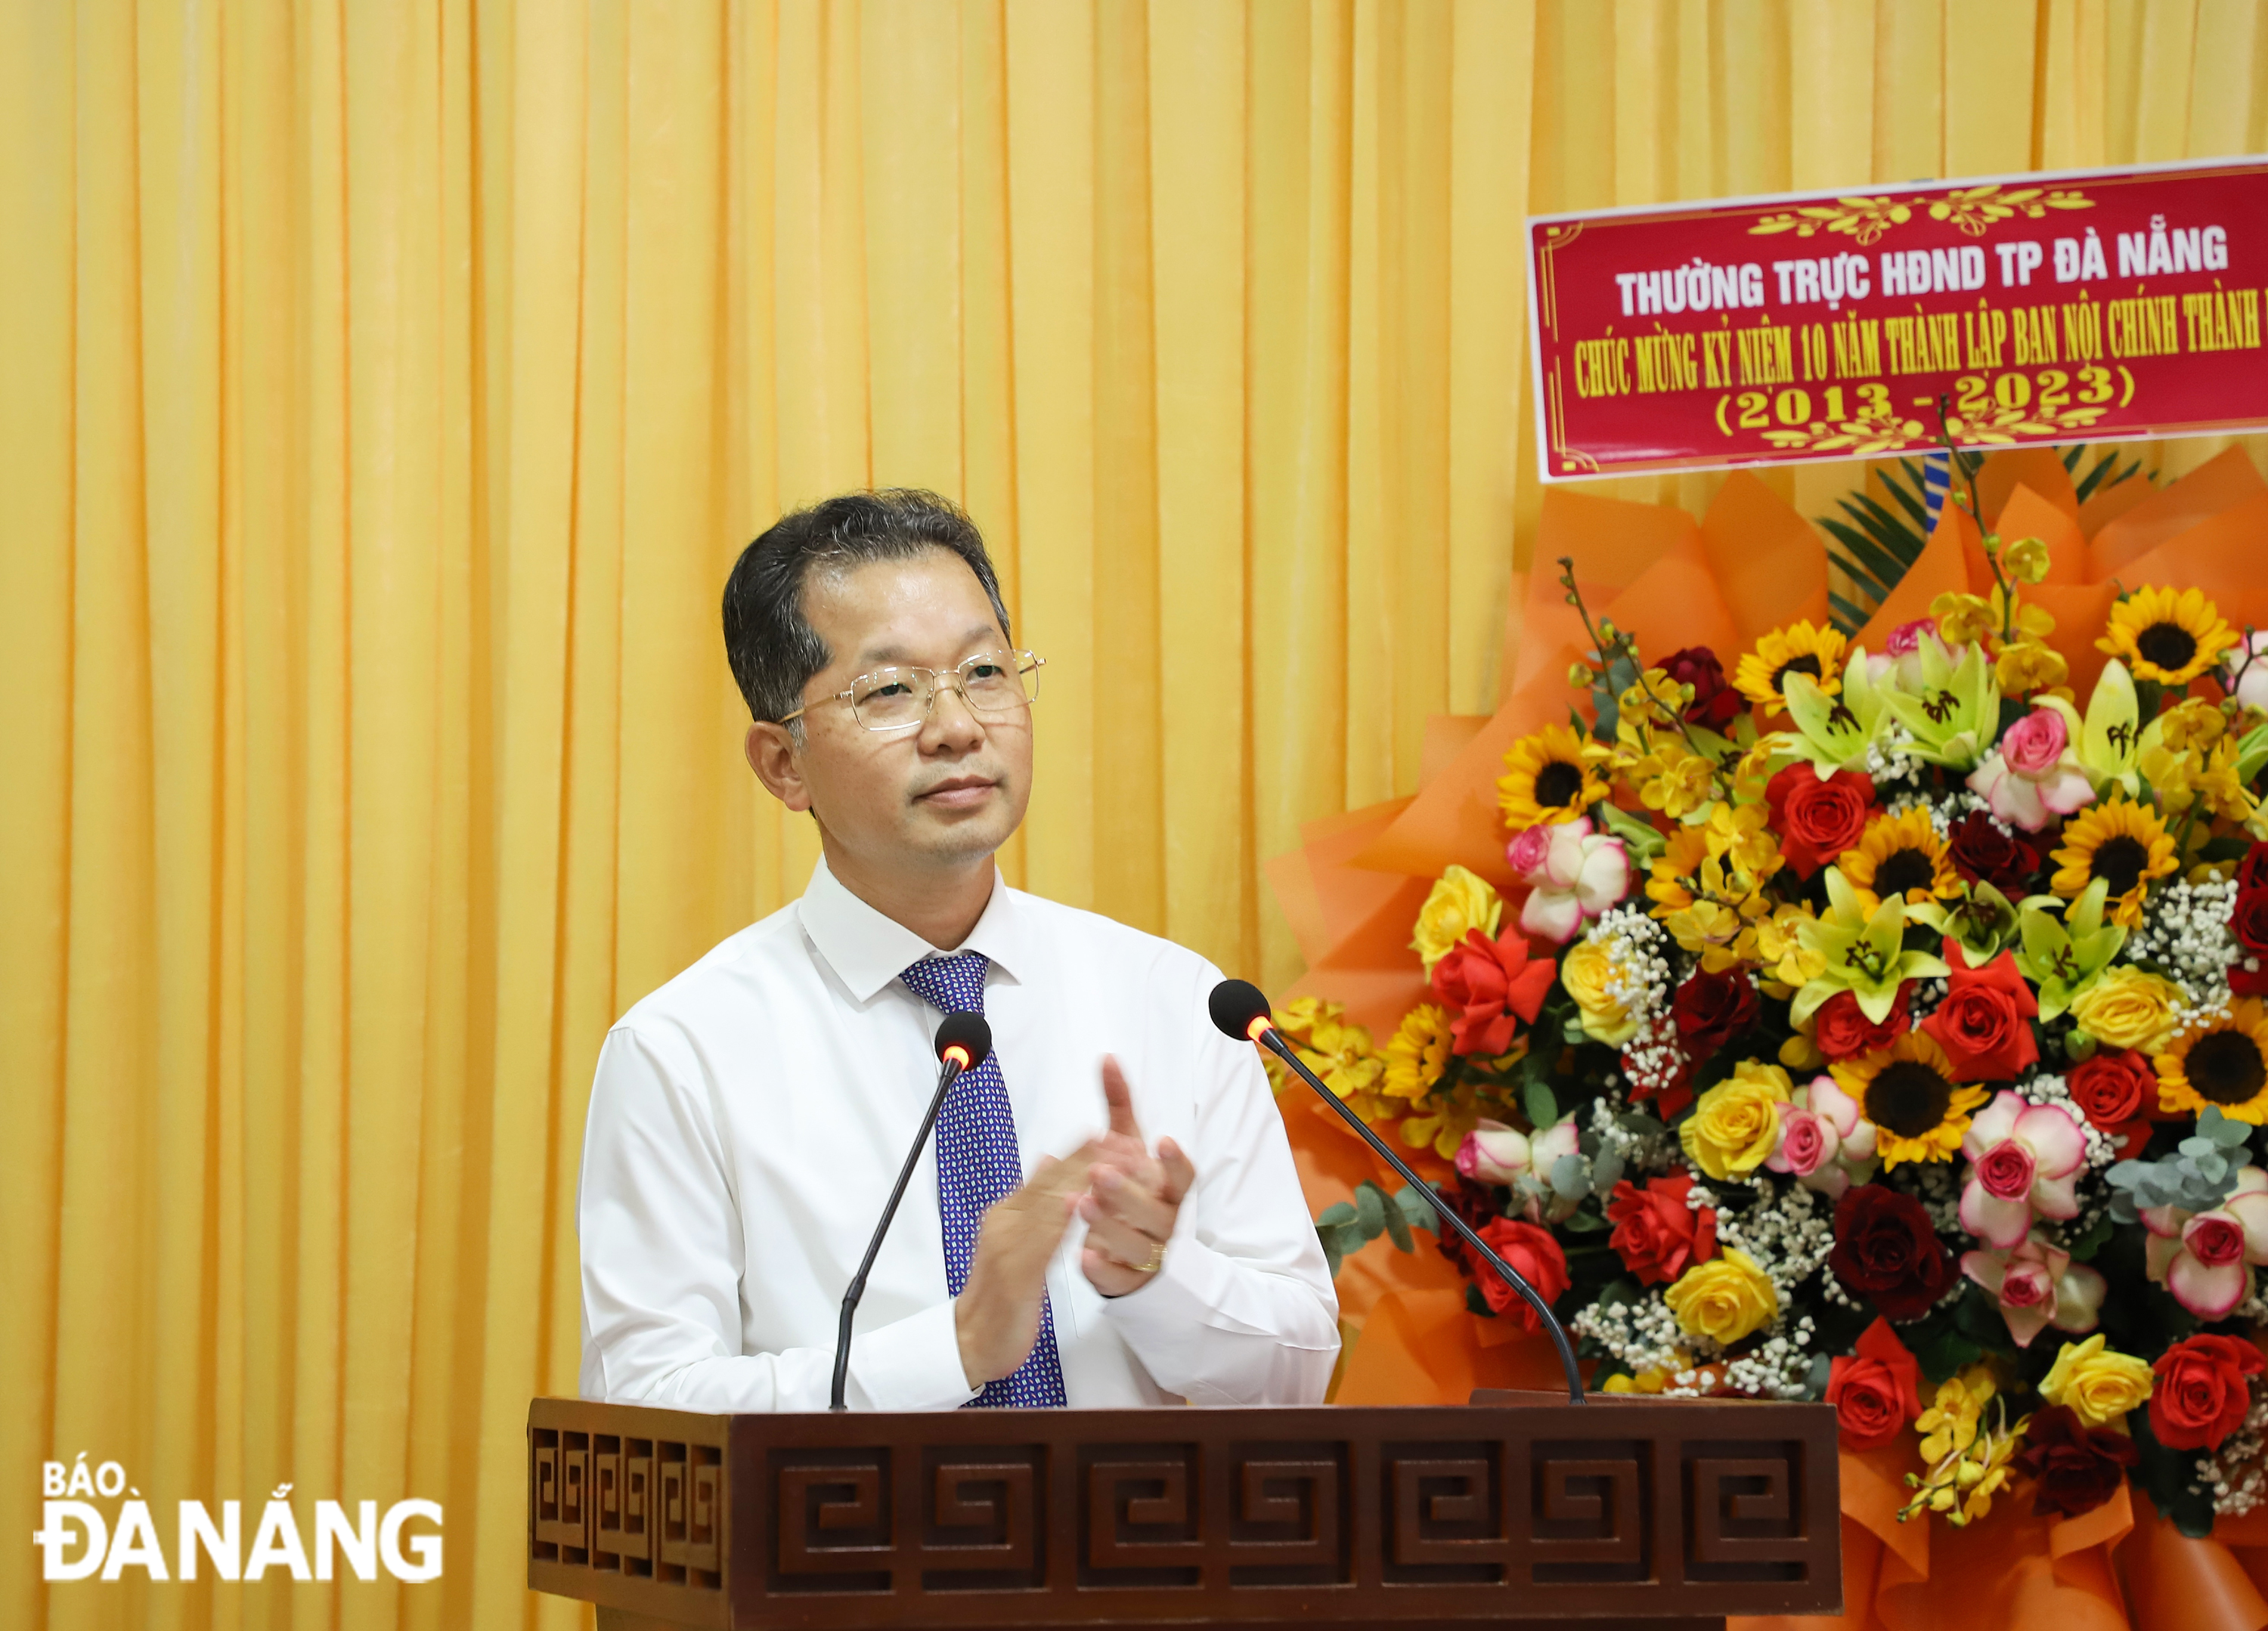 Bí thư Thành ủy Nguyễn Văn Quảng phát biểu tại lễ kỷ niệm 10 năm thành lập Ban Nội chính Thành ủy. Ảnh: NGỌC PHÚ